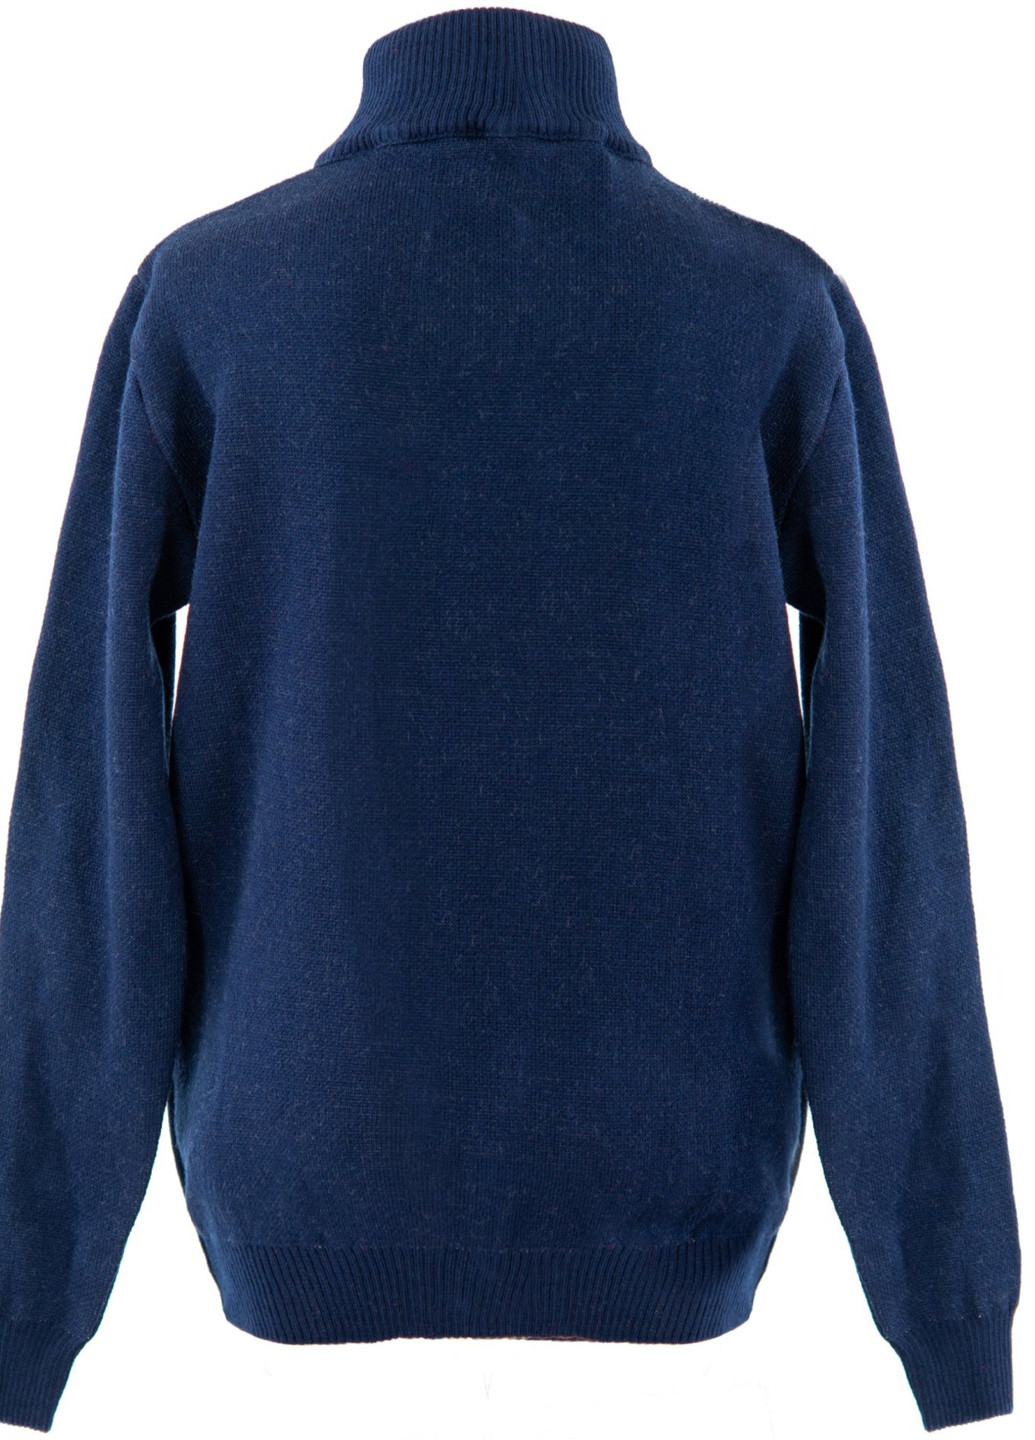 Синий светри кофта на дівчинку (орнамент)17241-709 Lemanta